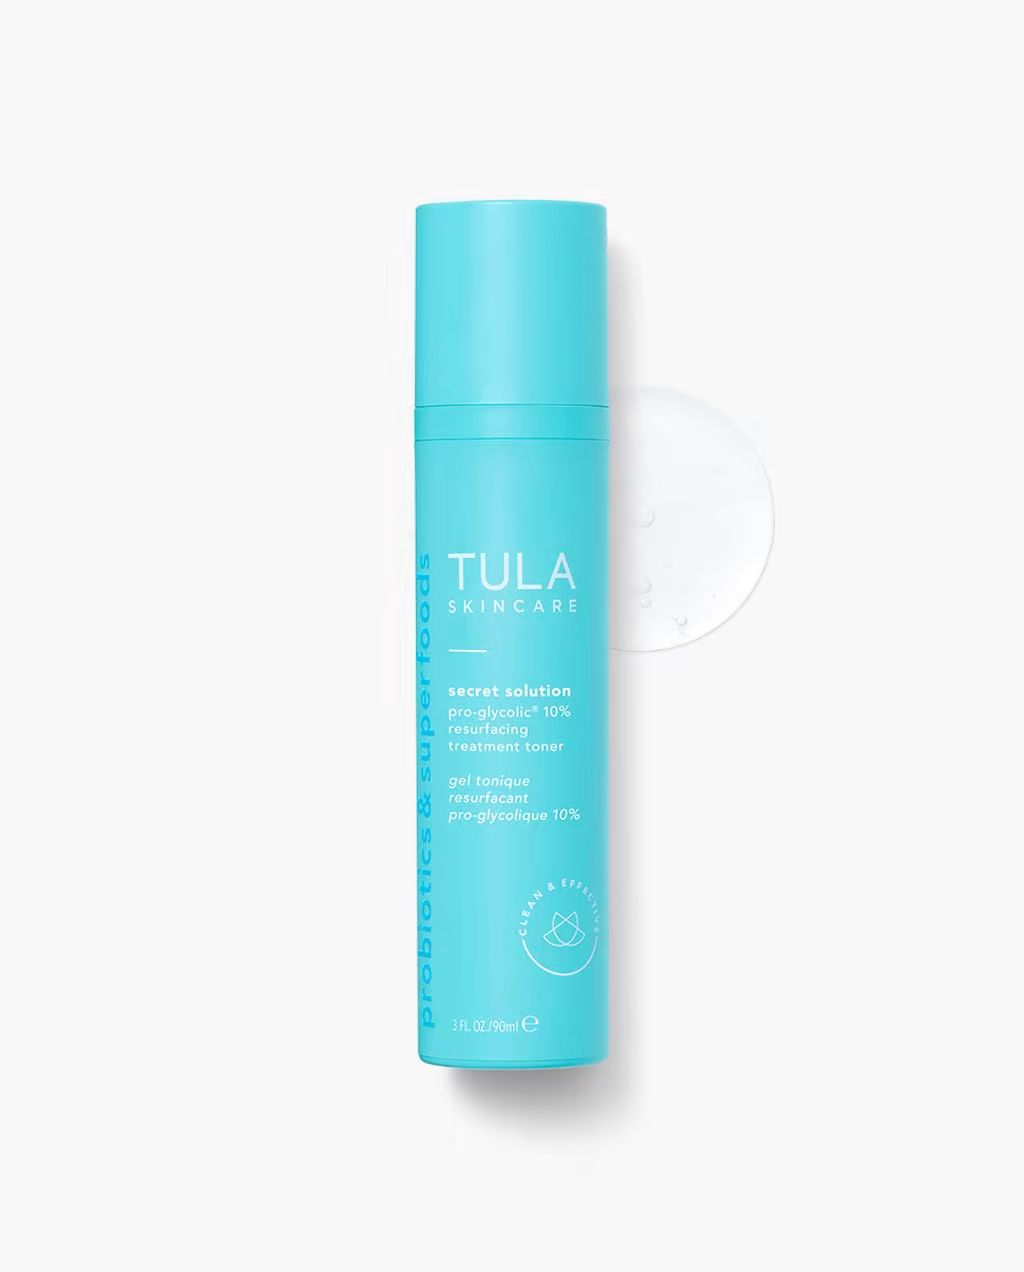 pro-glycolic® 10% resurfacing treatment toner | Tula Skincare